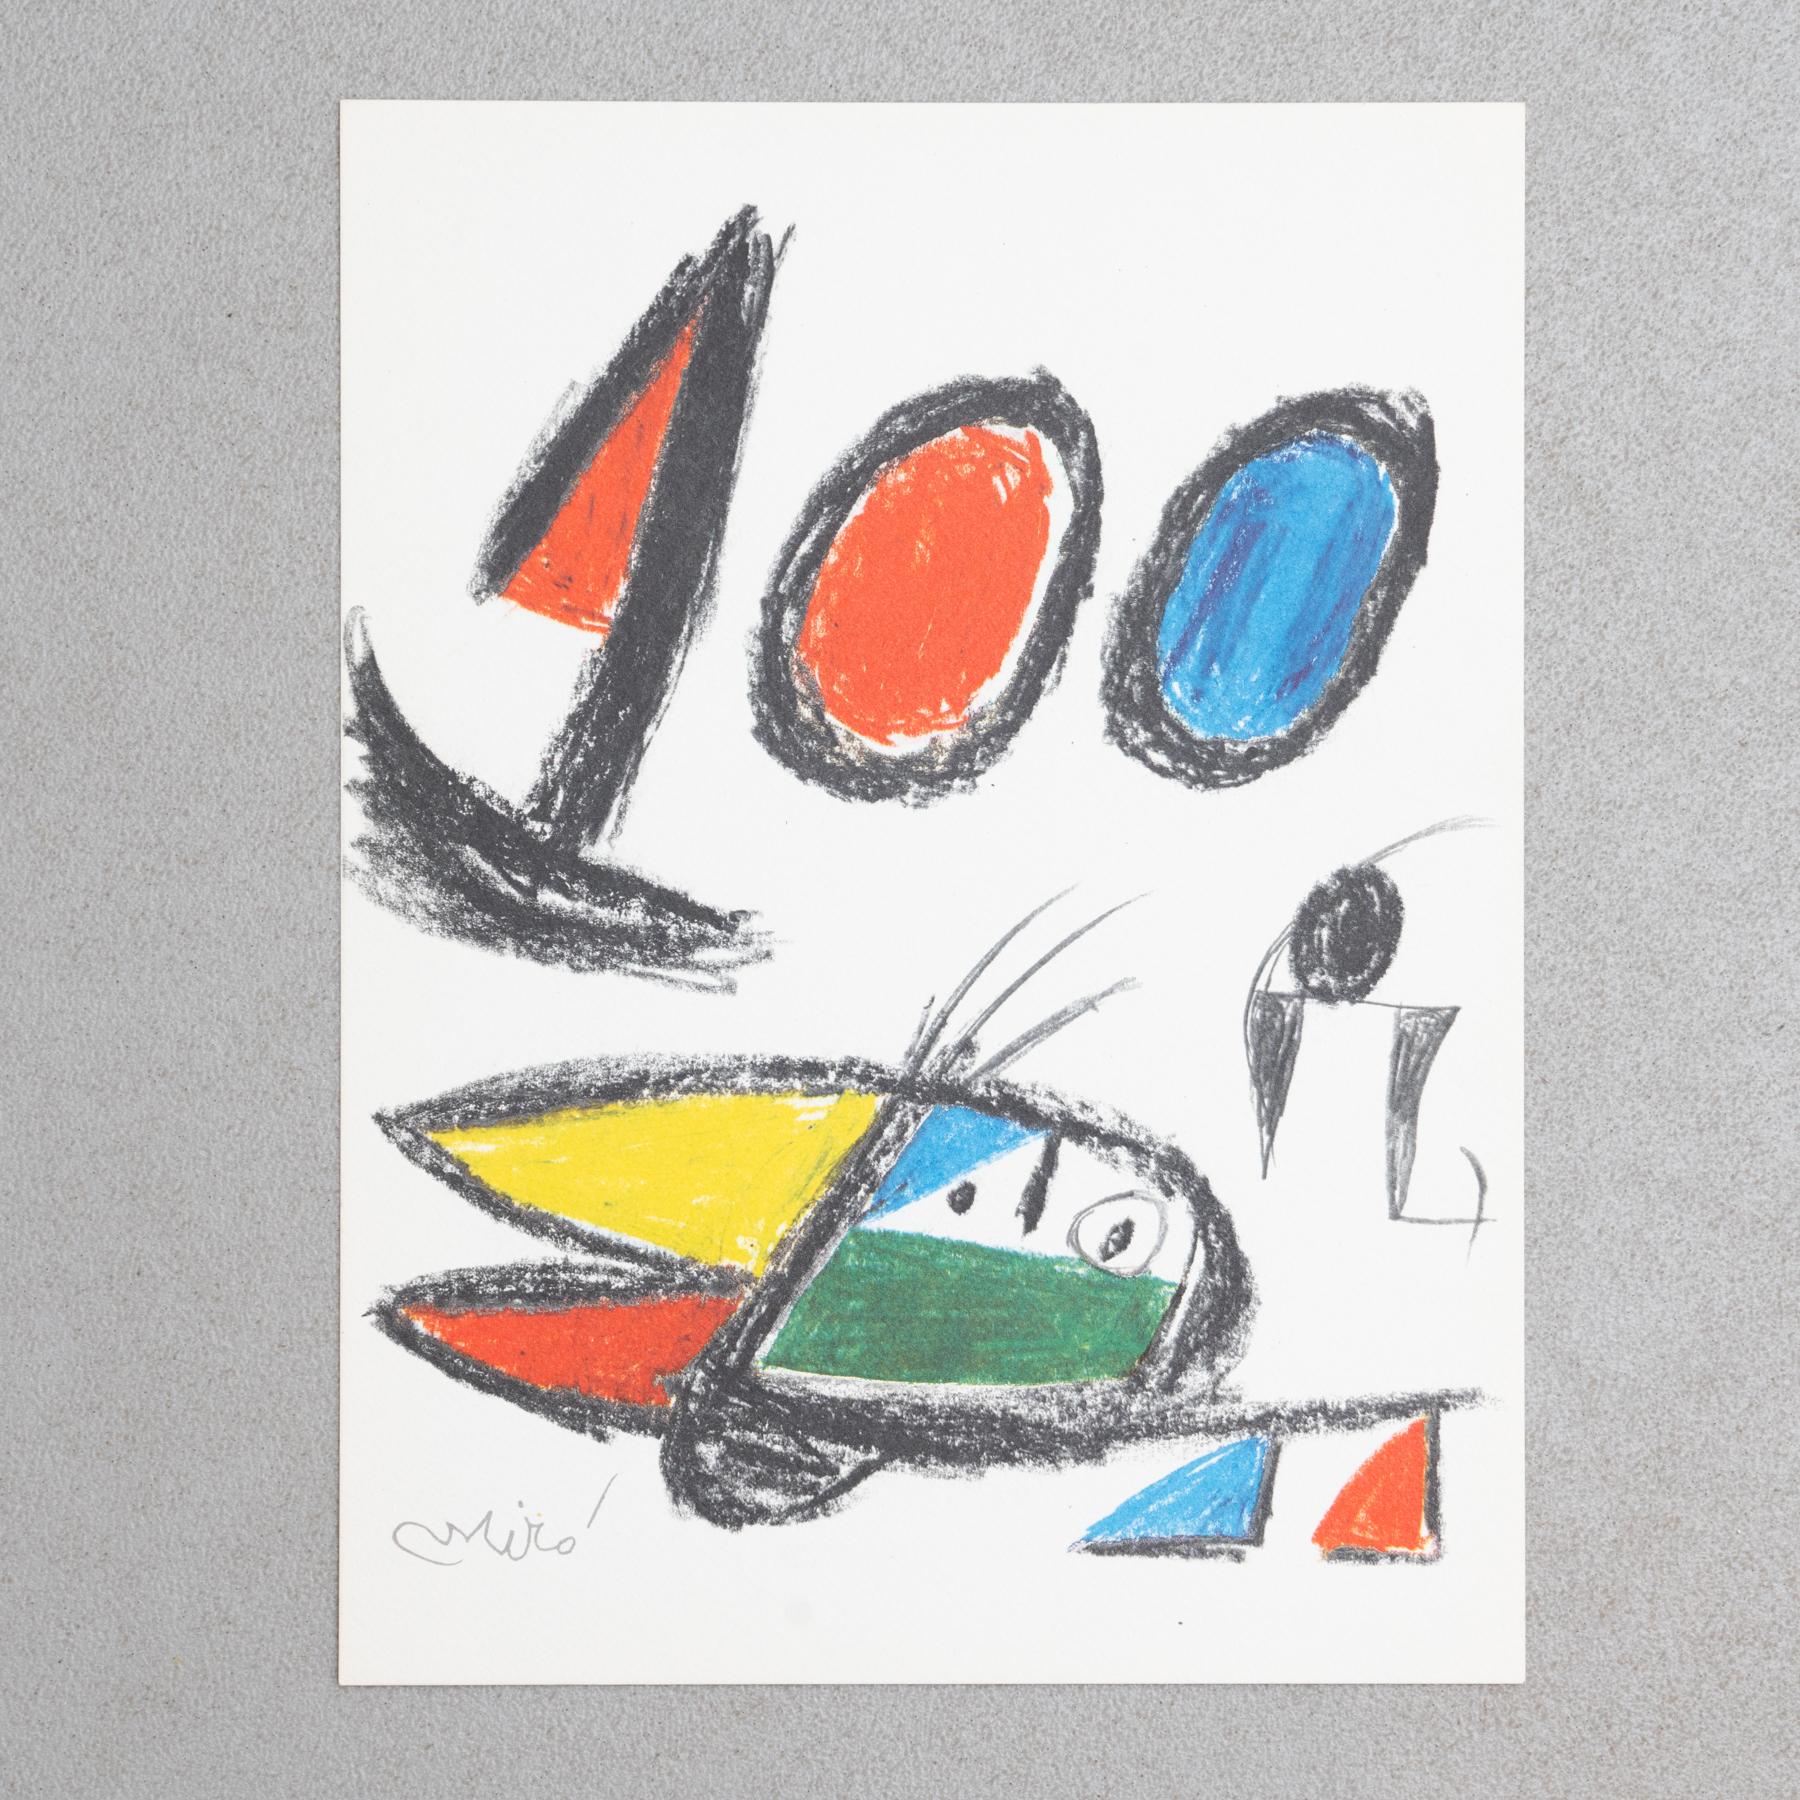 Lithographie de Joan Miró, vers 1970.

Reproduction en héliogravure estampillée de la série de Bolaffiarte. Édition limitée à 5000 exemplaires.

Non encadré.

Signé par l'artiste.

En bon état d'origine.

Joan Miró i Ferrà (20 avril 1893 -